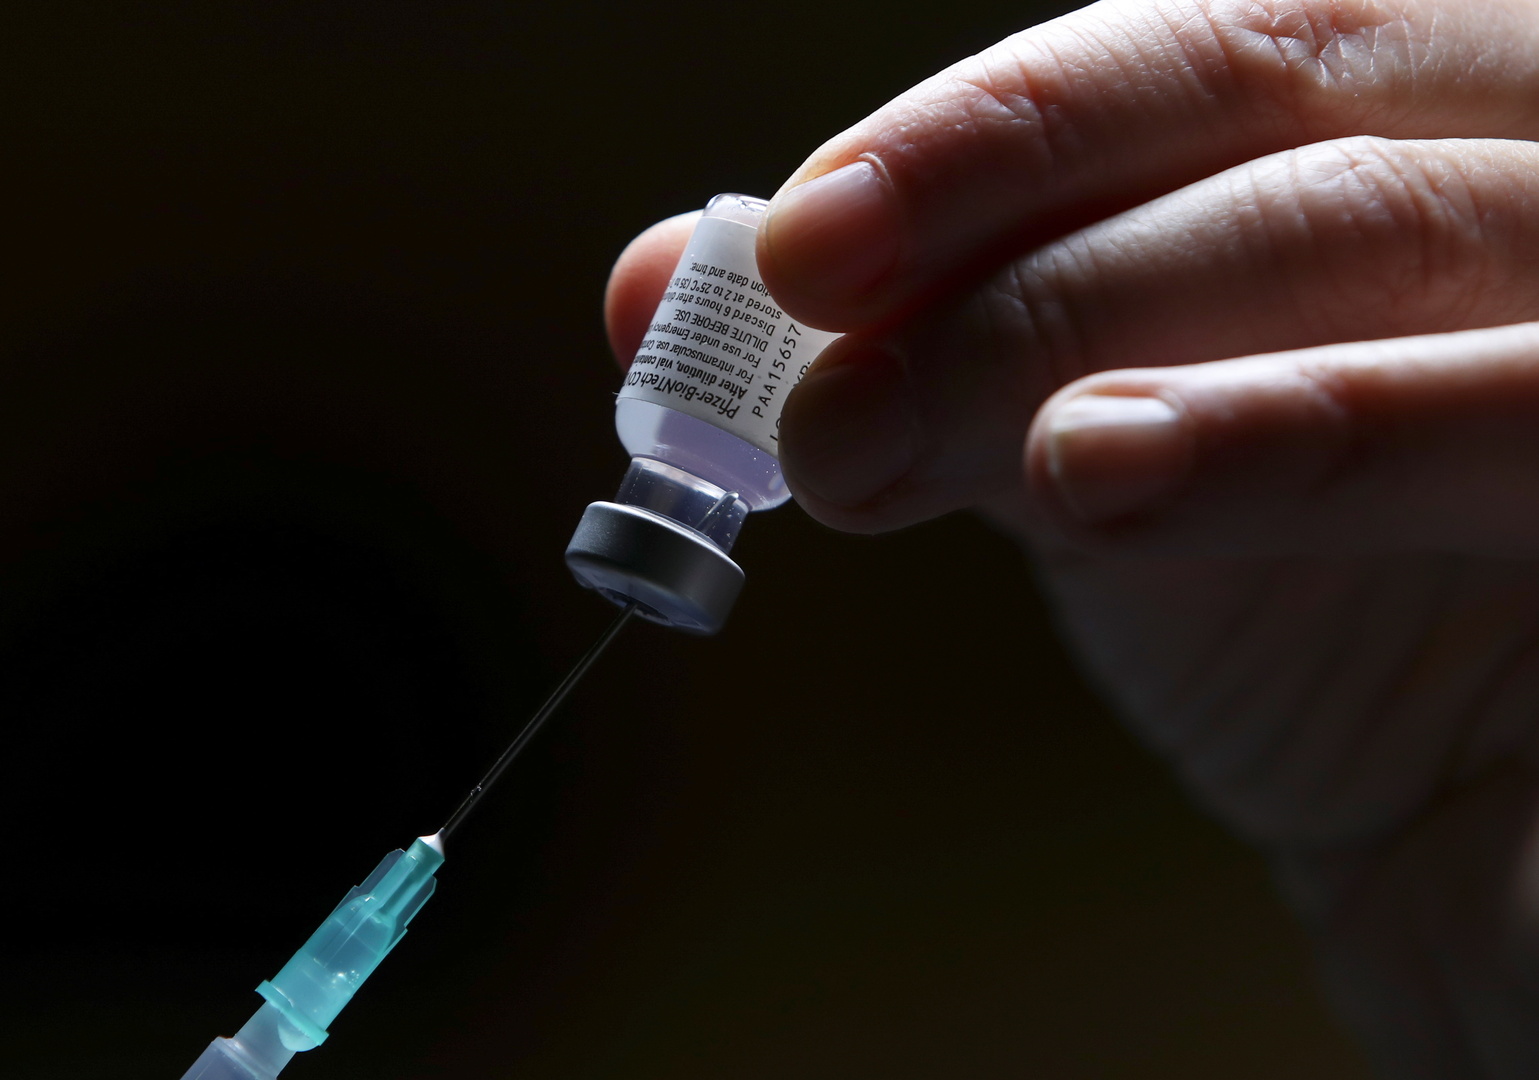 الولايات المتحدة.. إصابة 4 أشخاص بكورونا بعد الجرعة الثانية من اللقاح